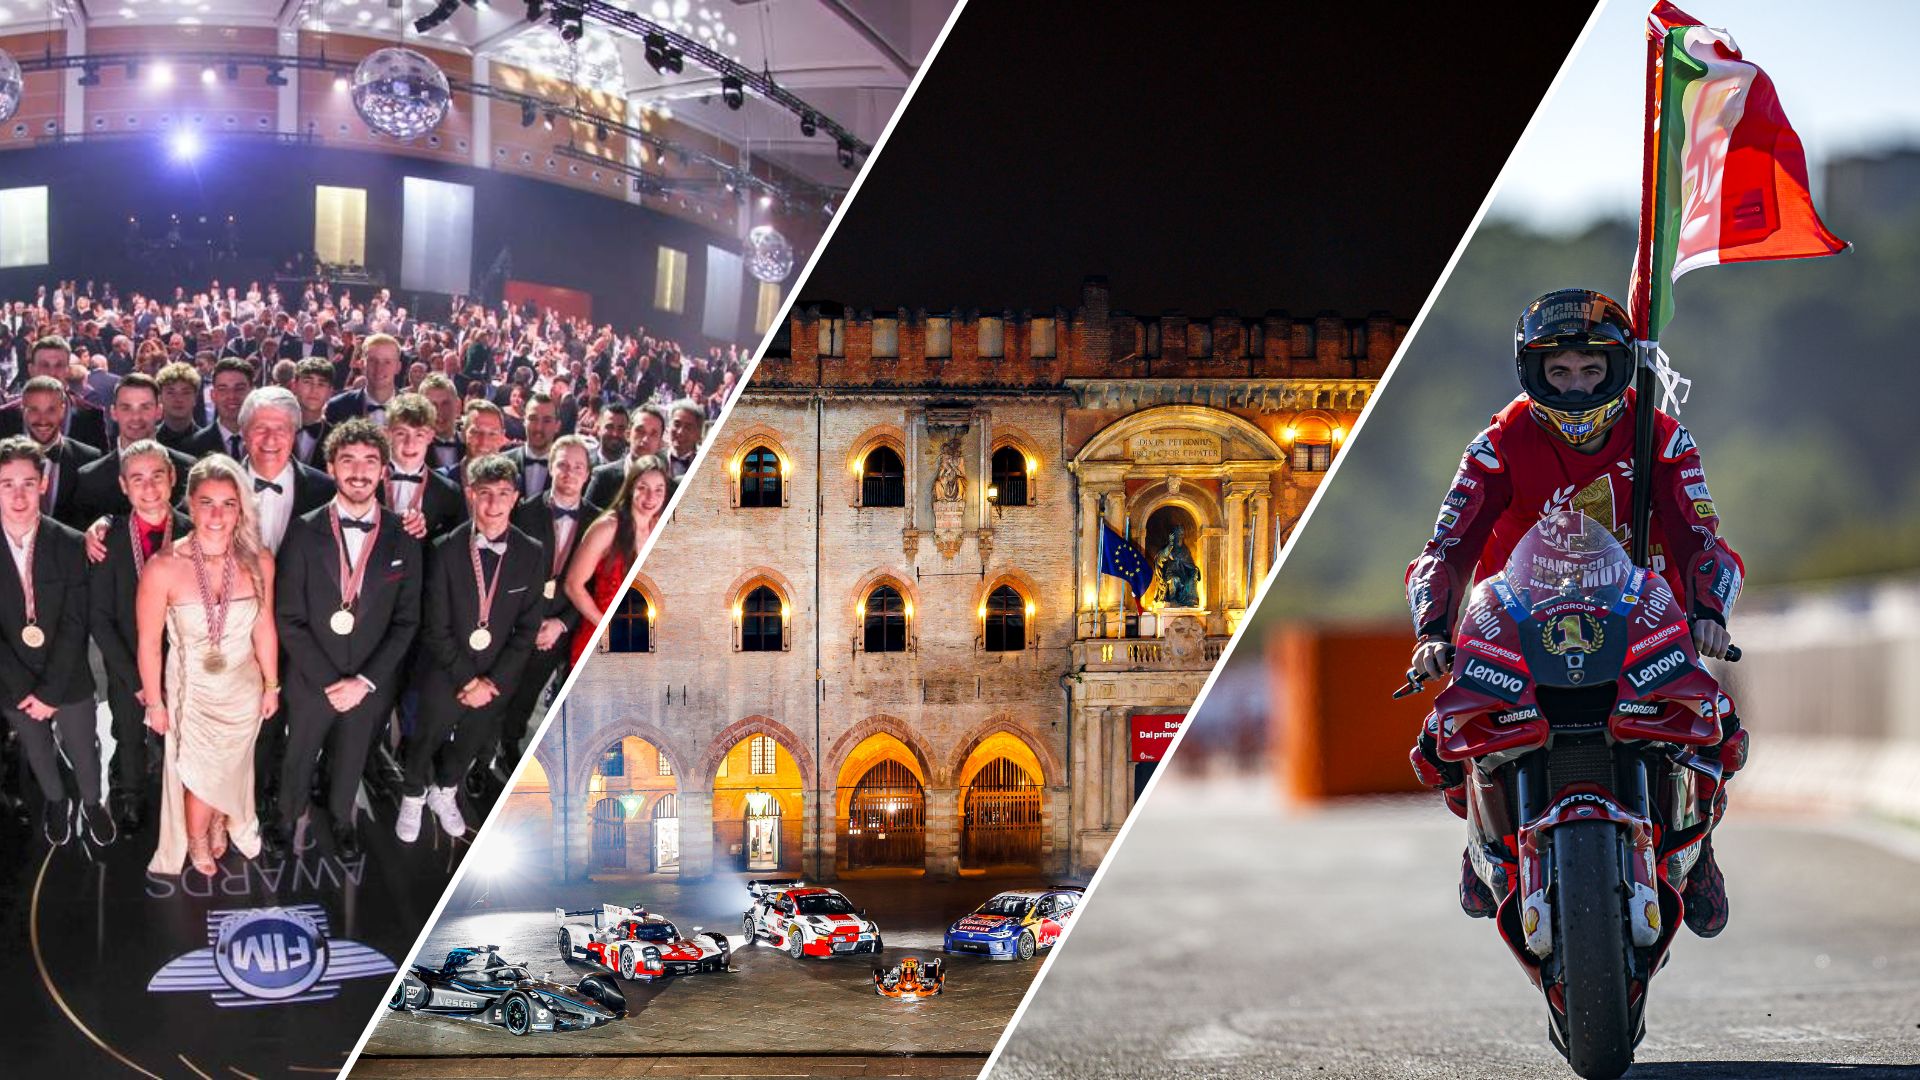 FIM Awards, FIA Prize Giving e Campioni in Piazza²: la Motor Valley capitale mondiale del Motorsport.